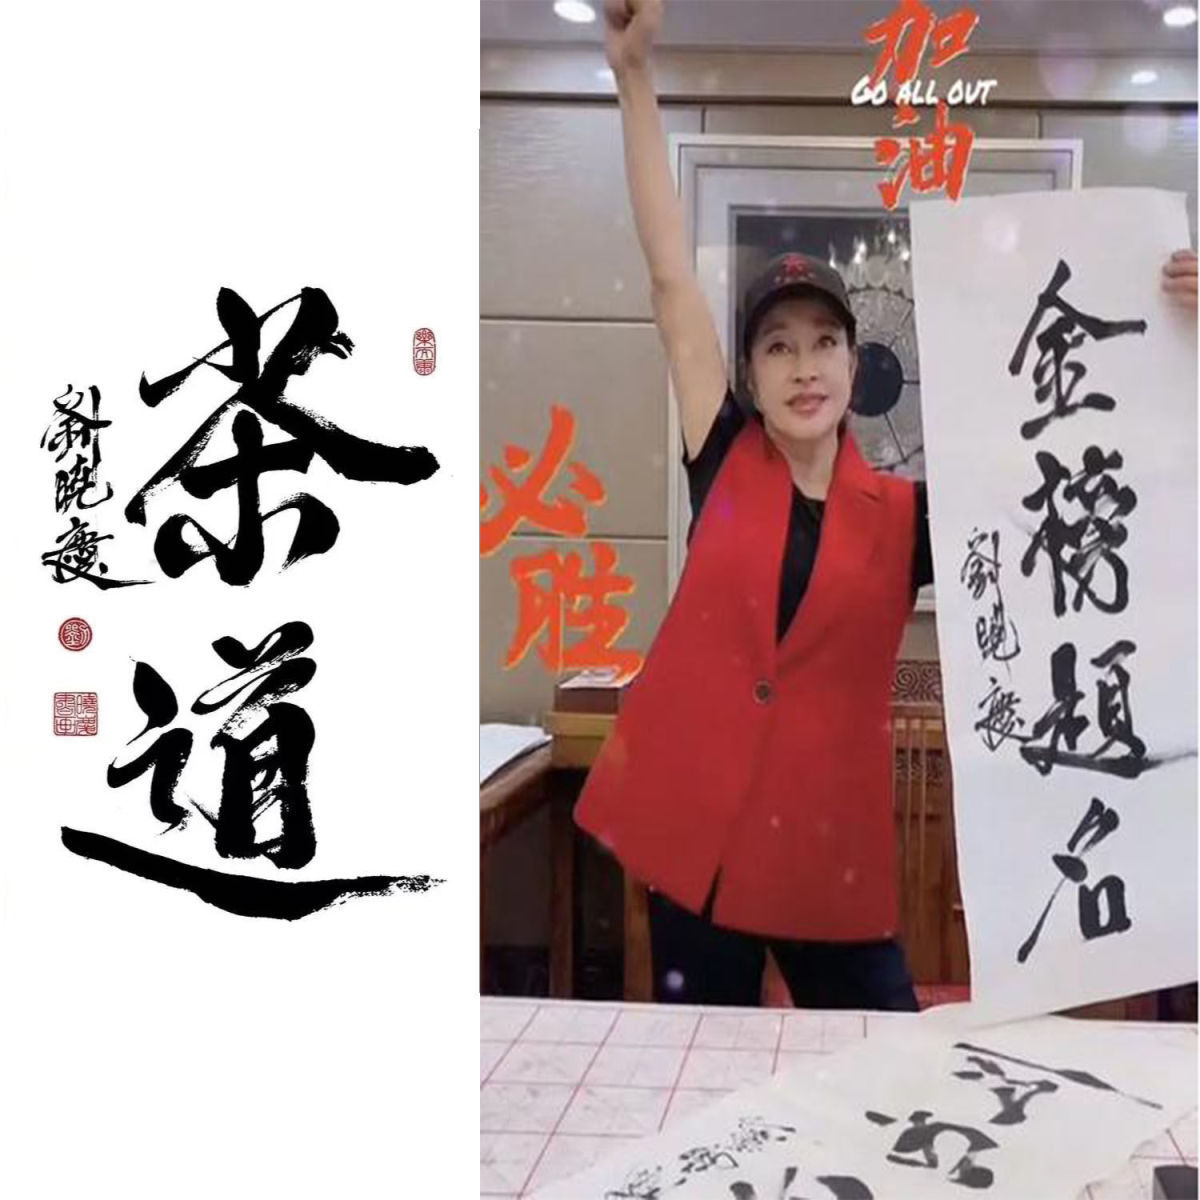 临摹明星刘晓庆书法武则天题字名人名家字画收藏毛笔手写临摹墨迹